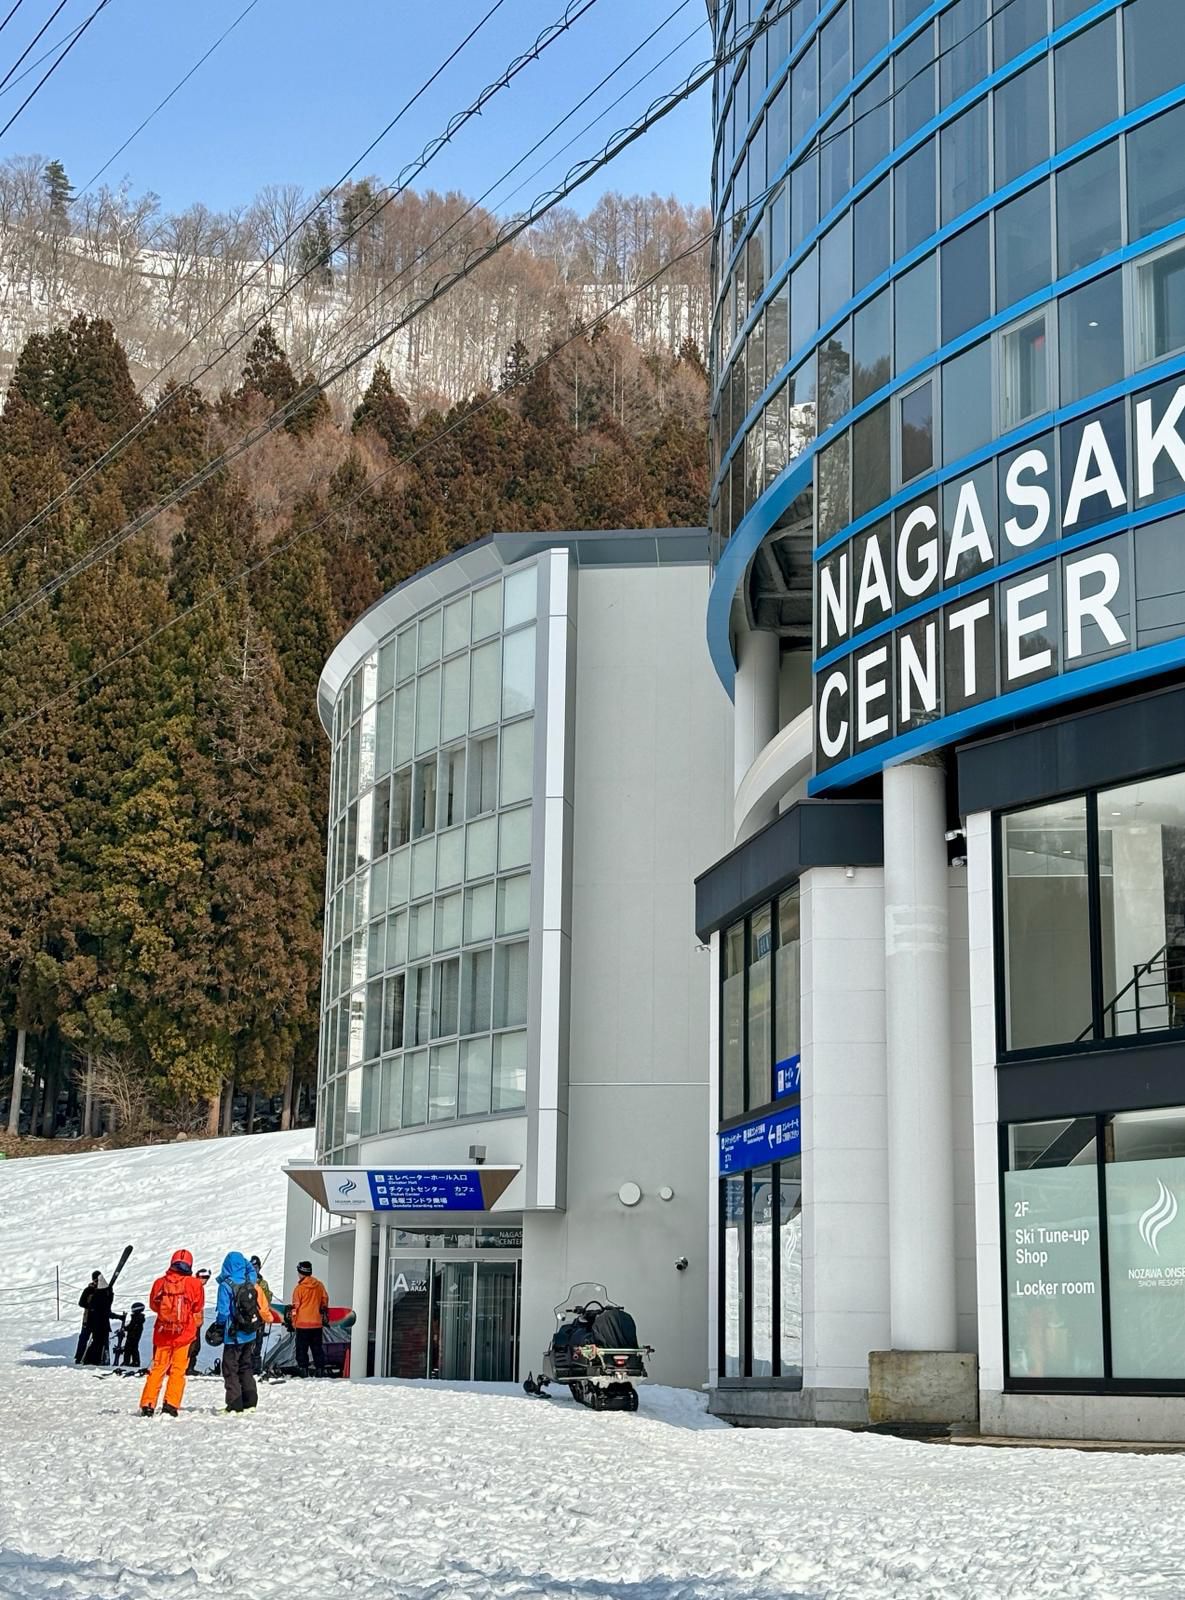 Nagasaka gondola ticket office and station 